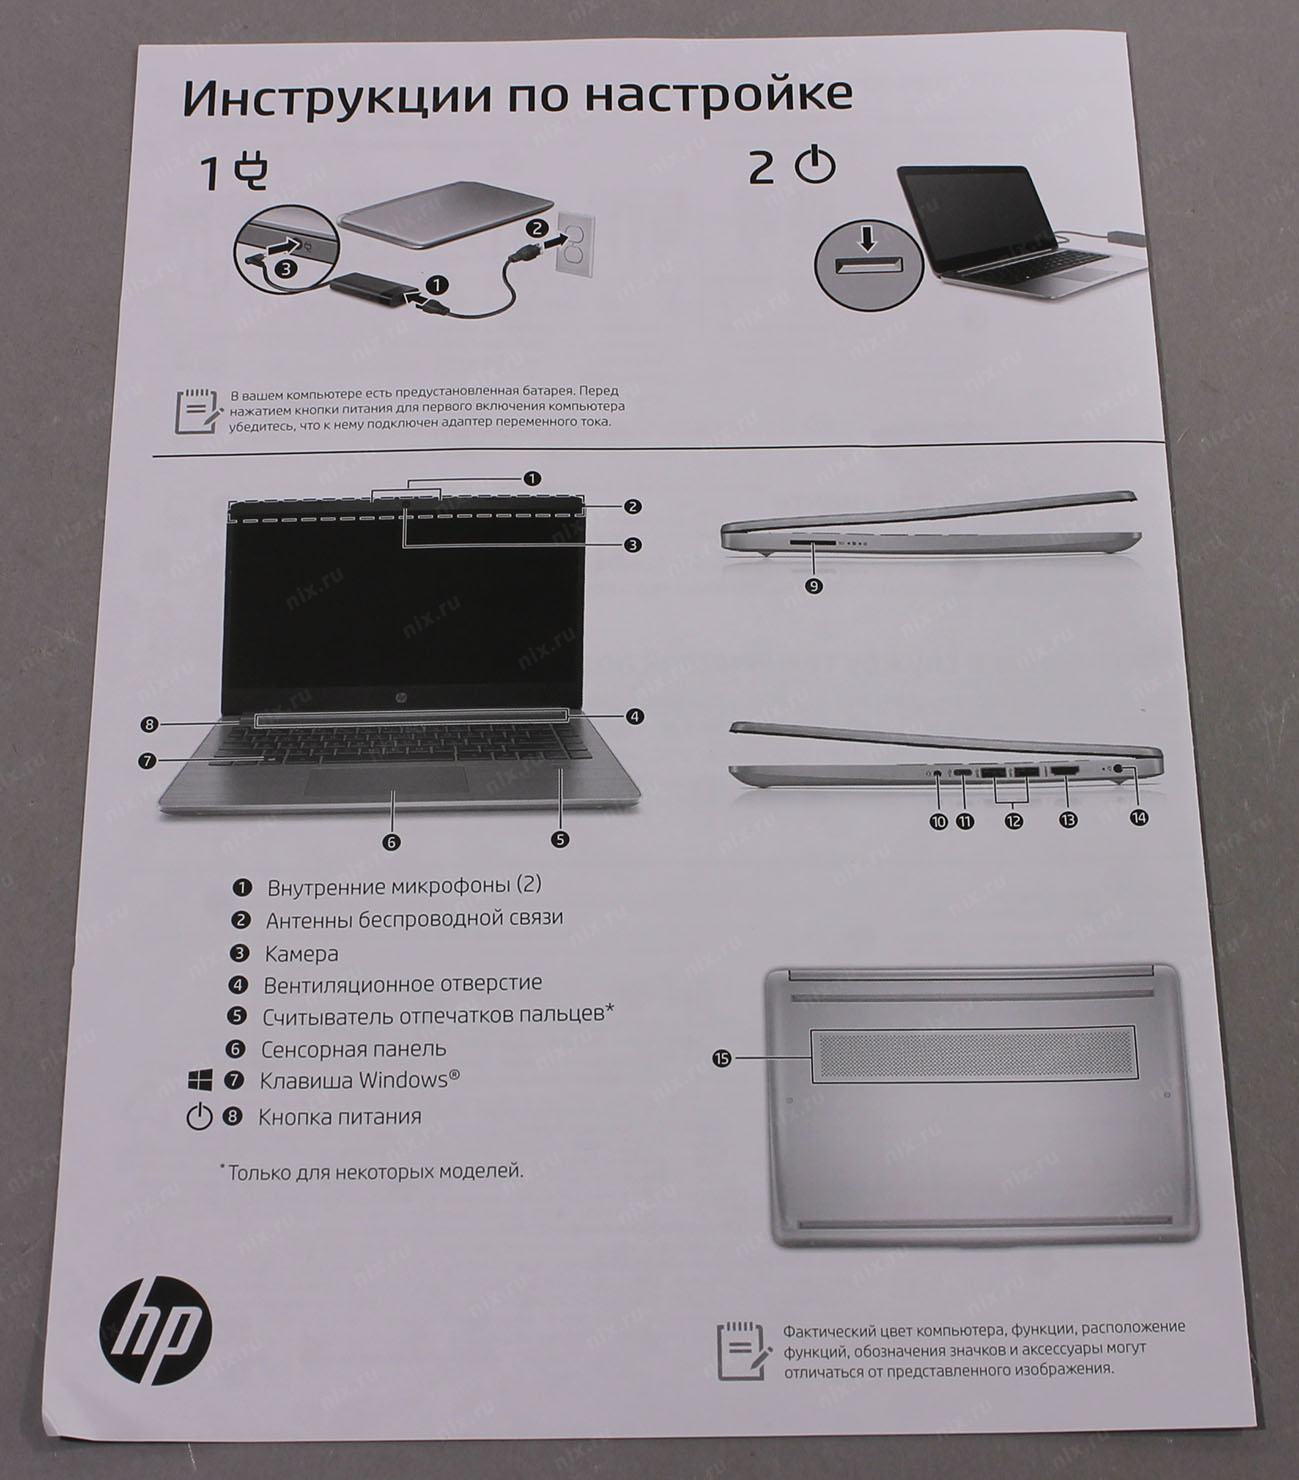 Купить Ноутбук Hp 340s G7